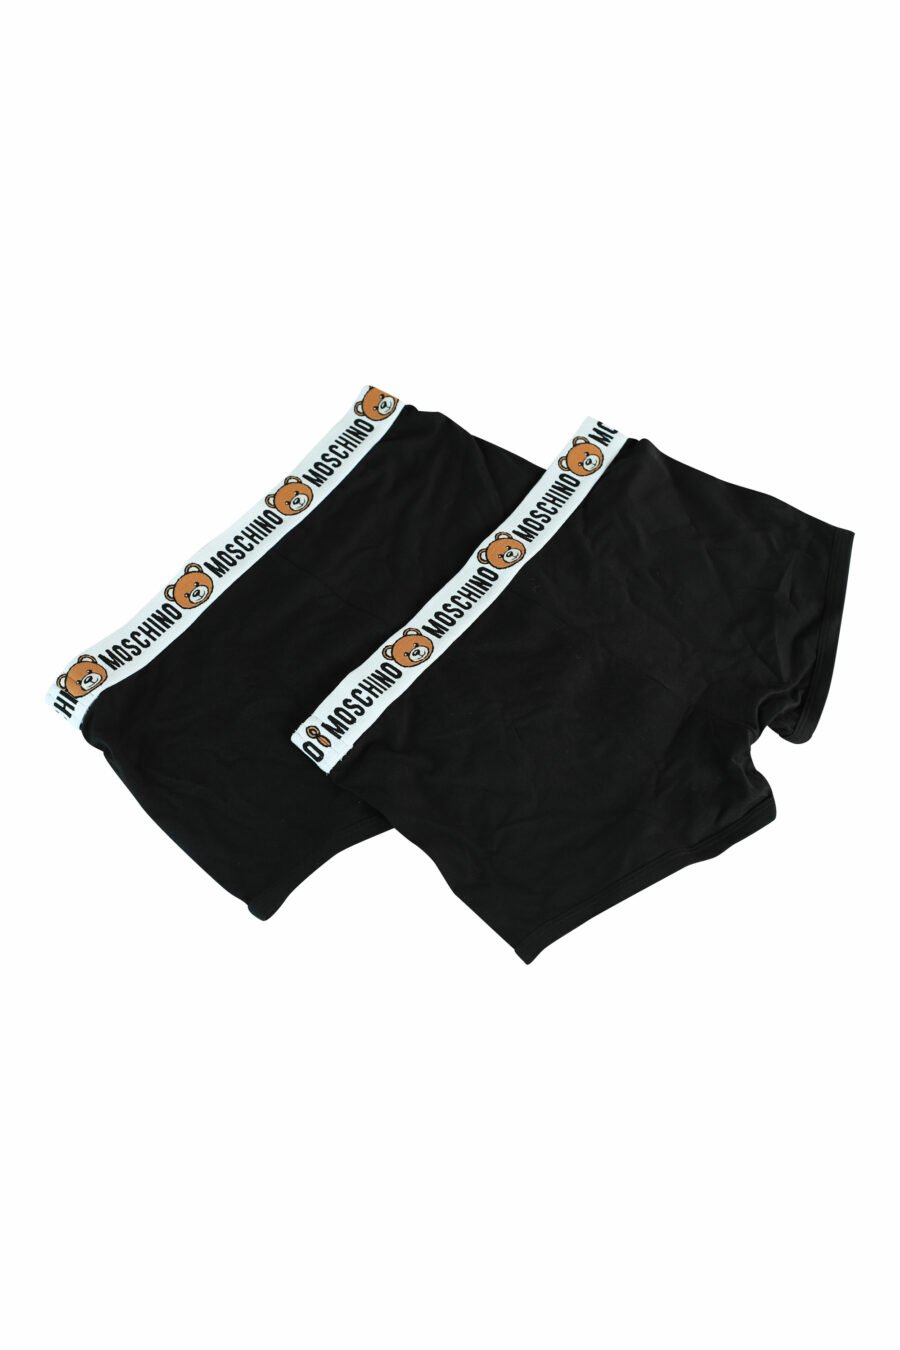 Pack de dos boxers negros con logo oso en cinturilla - 889316228779 2